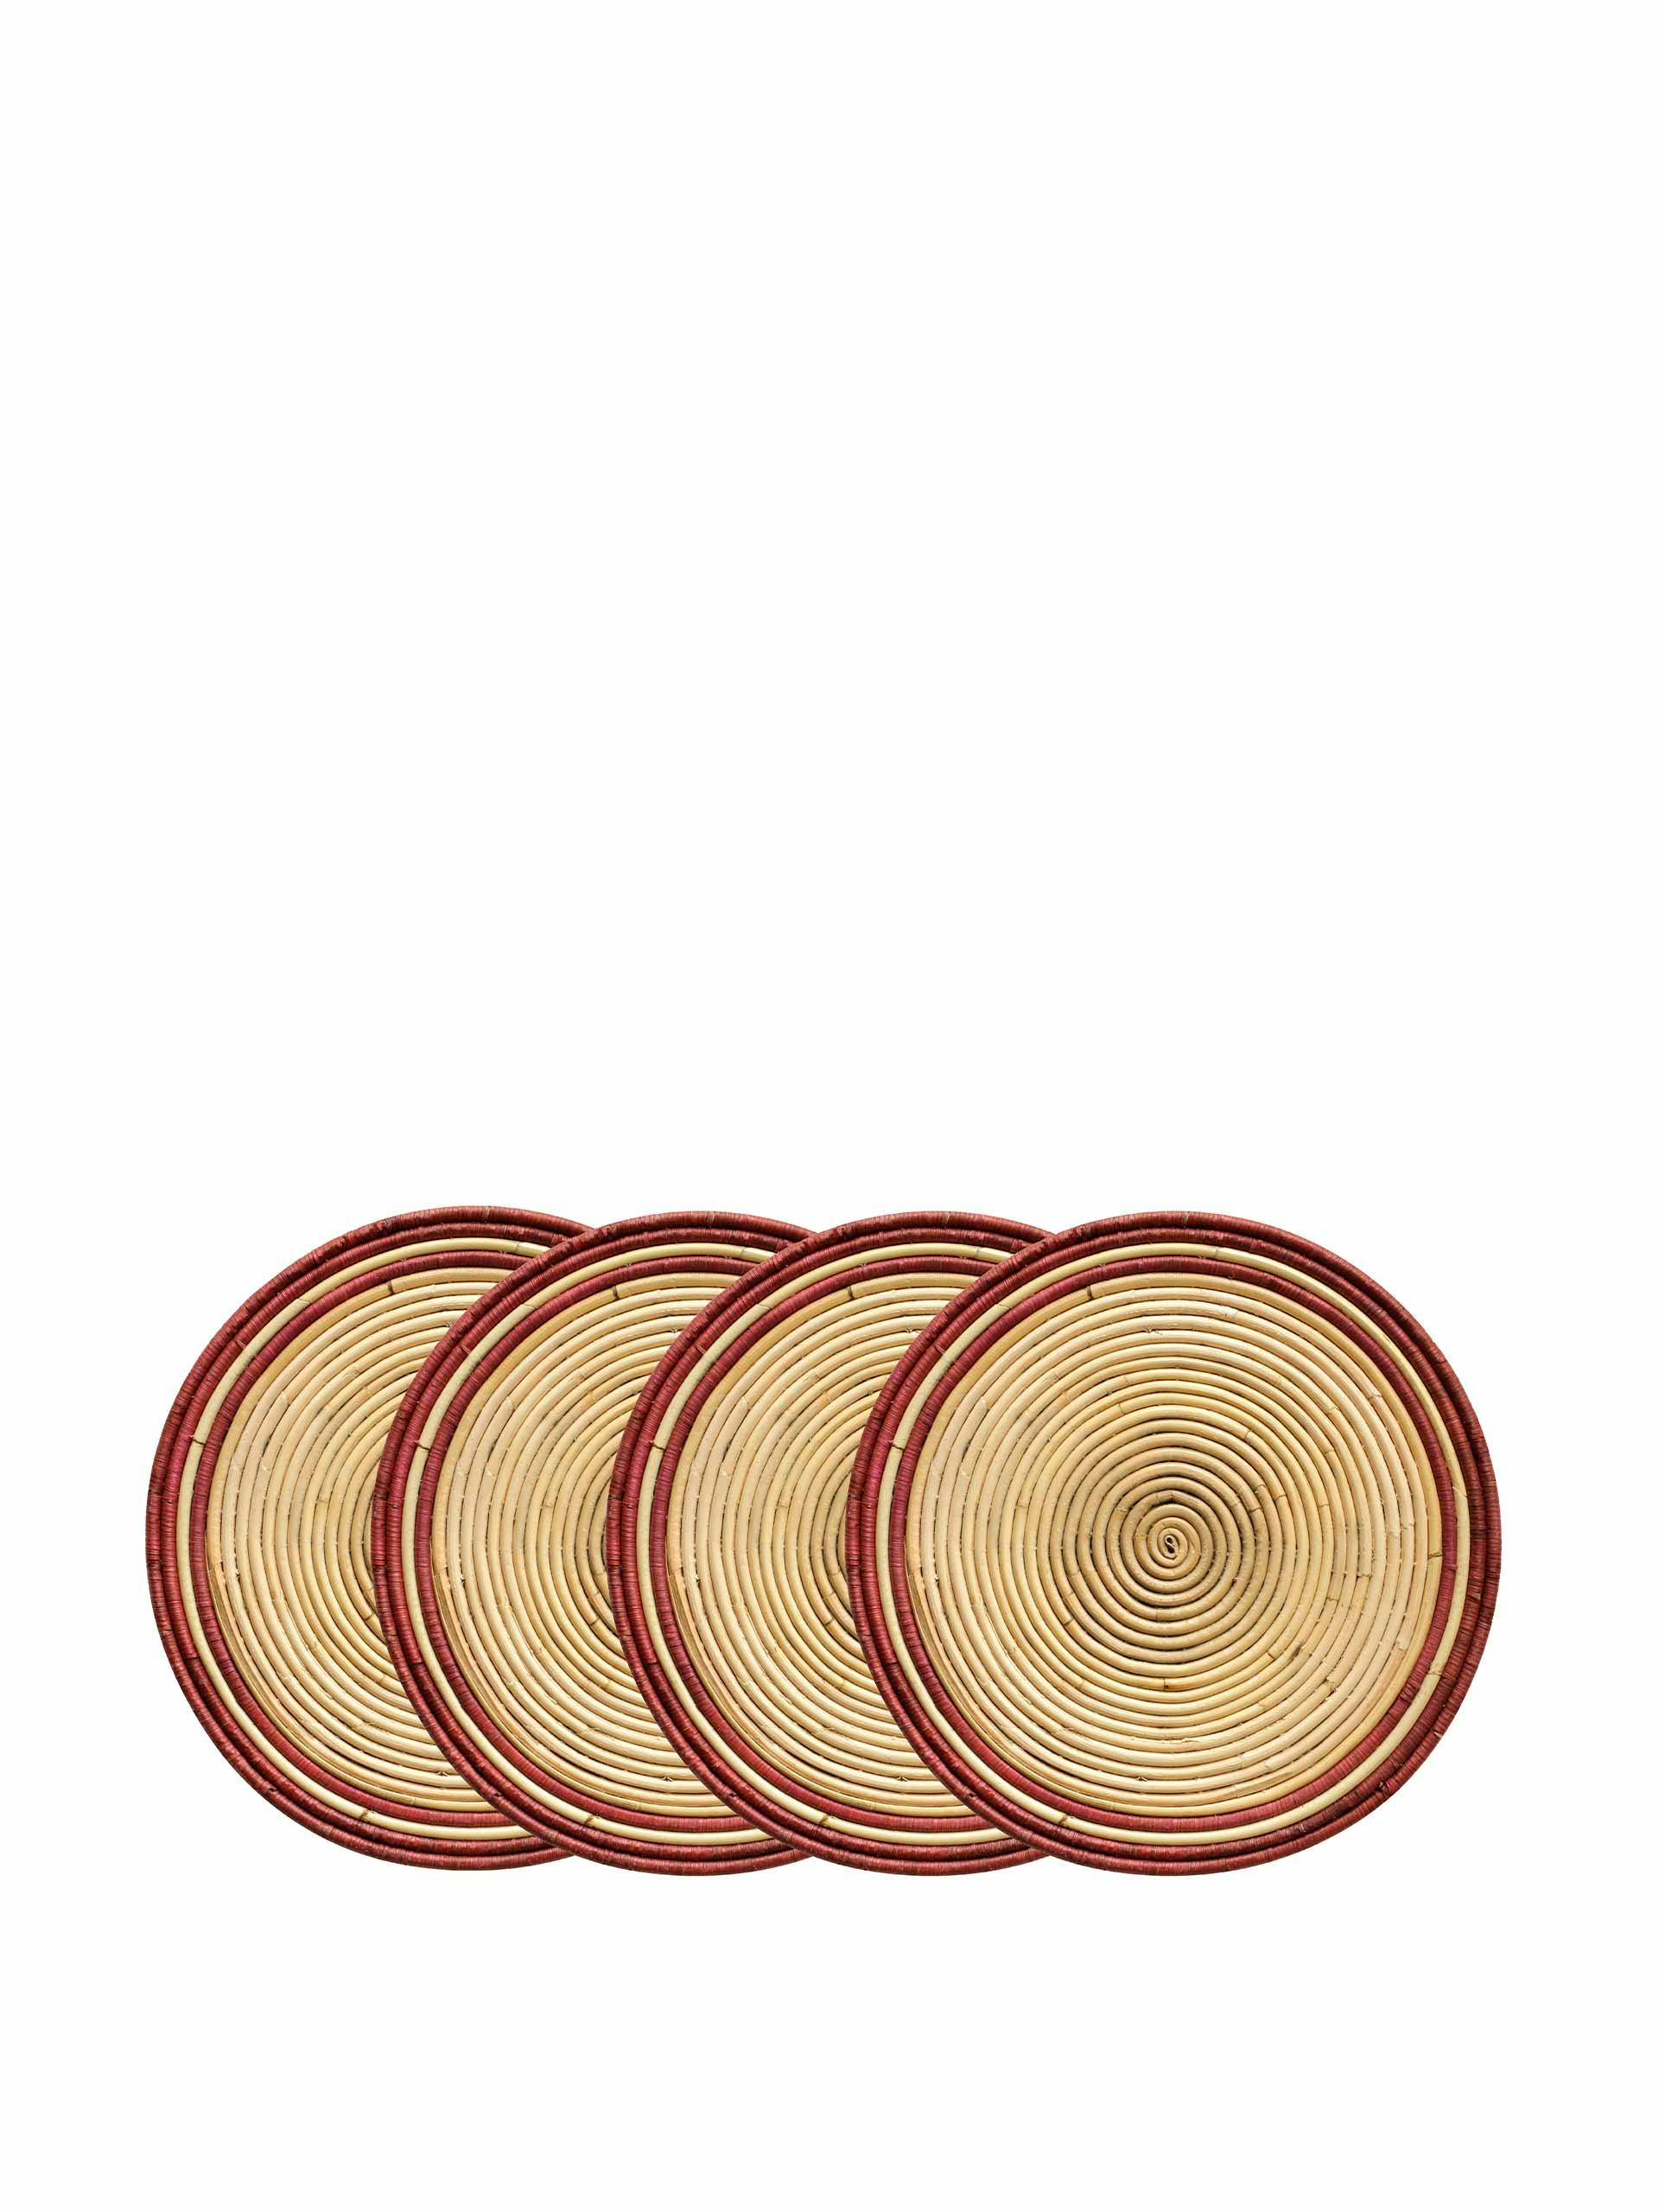 Handwoven circular rattan placemats (set of 4)